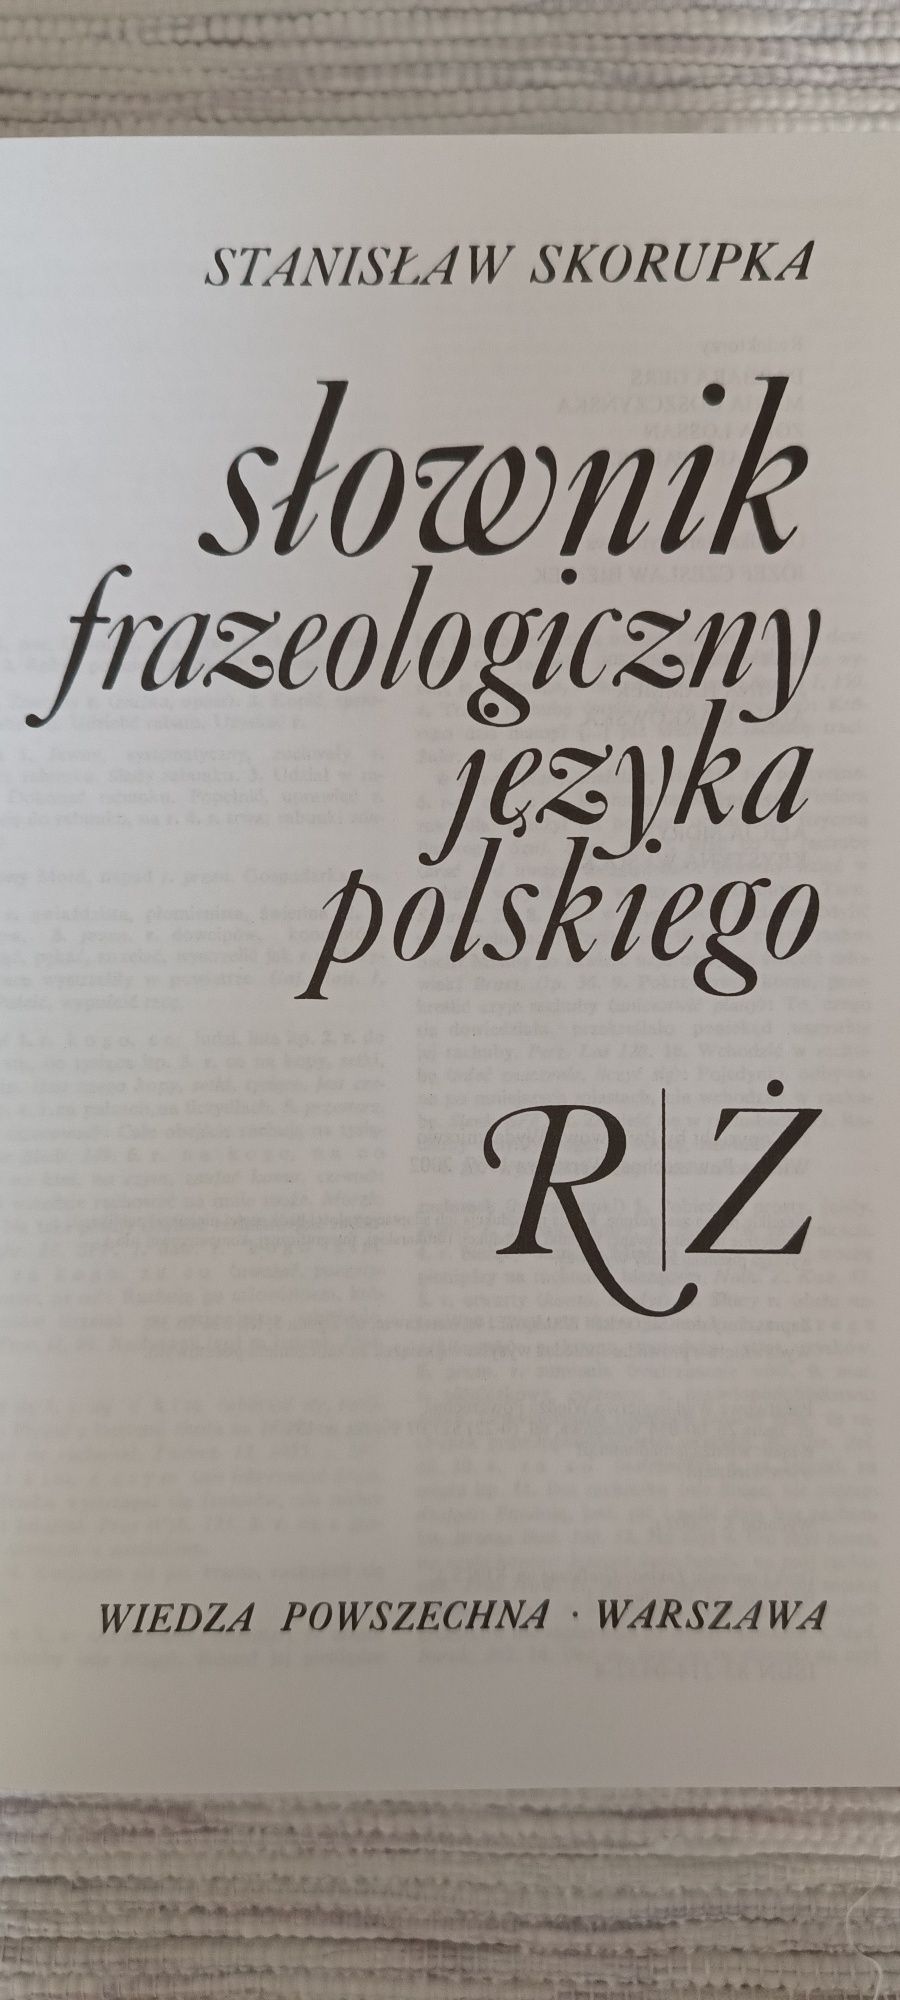 II tomy Słownika Frazeologicznego Języka Polskiego 2002 rok